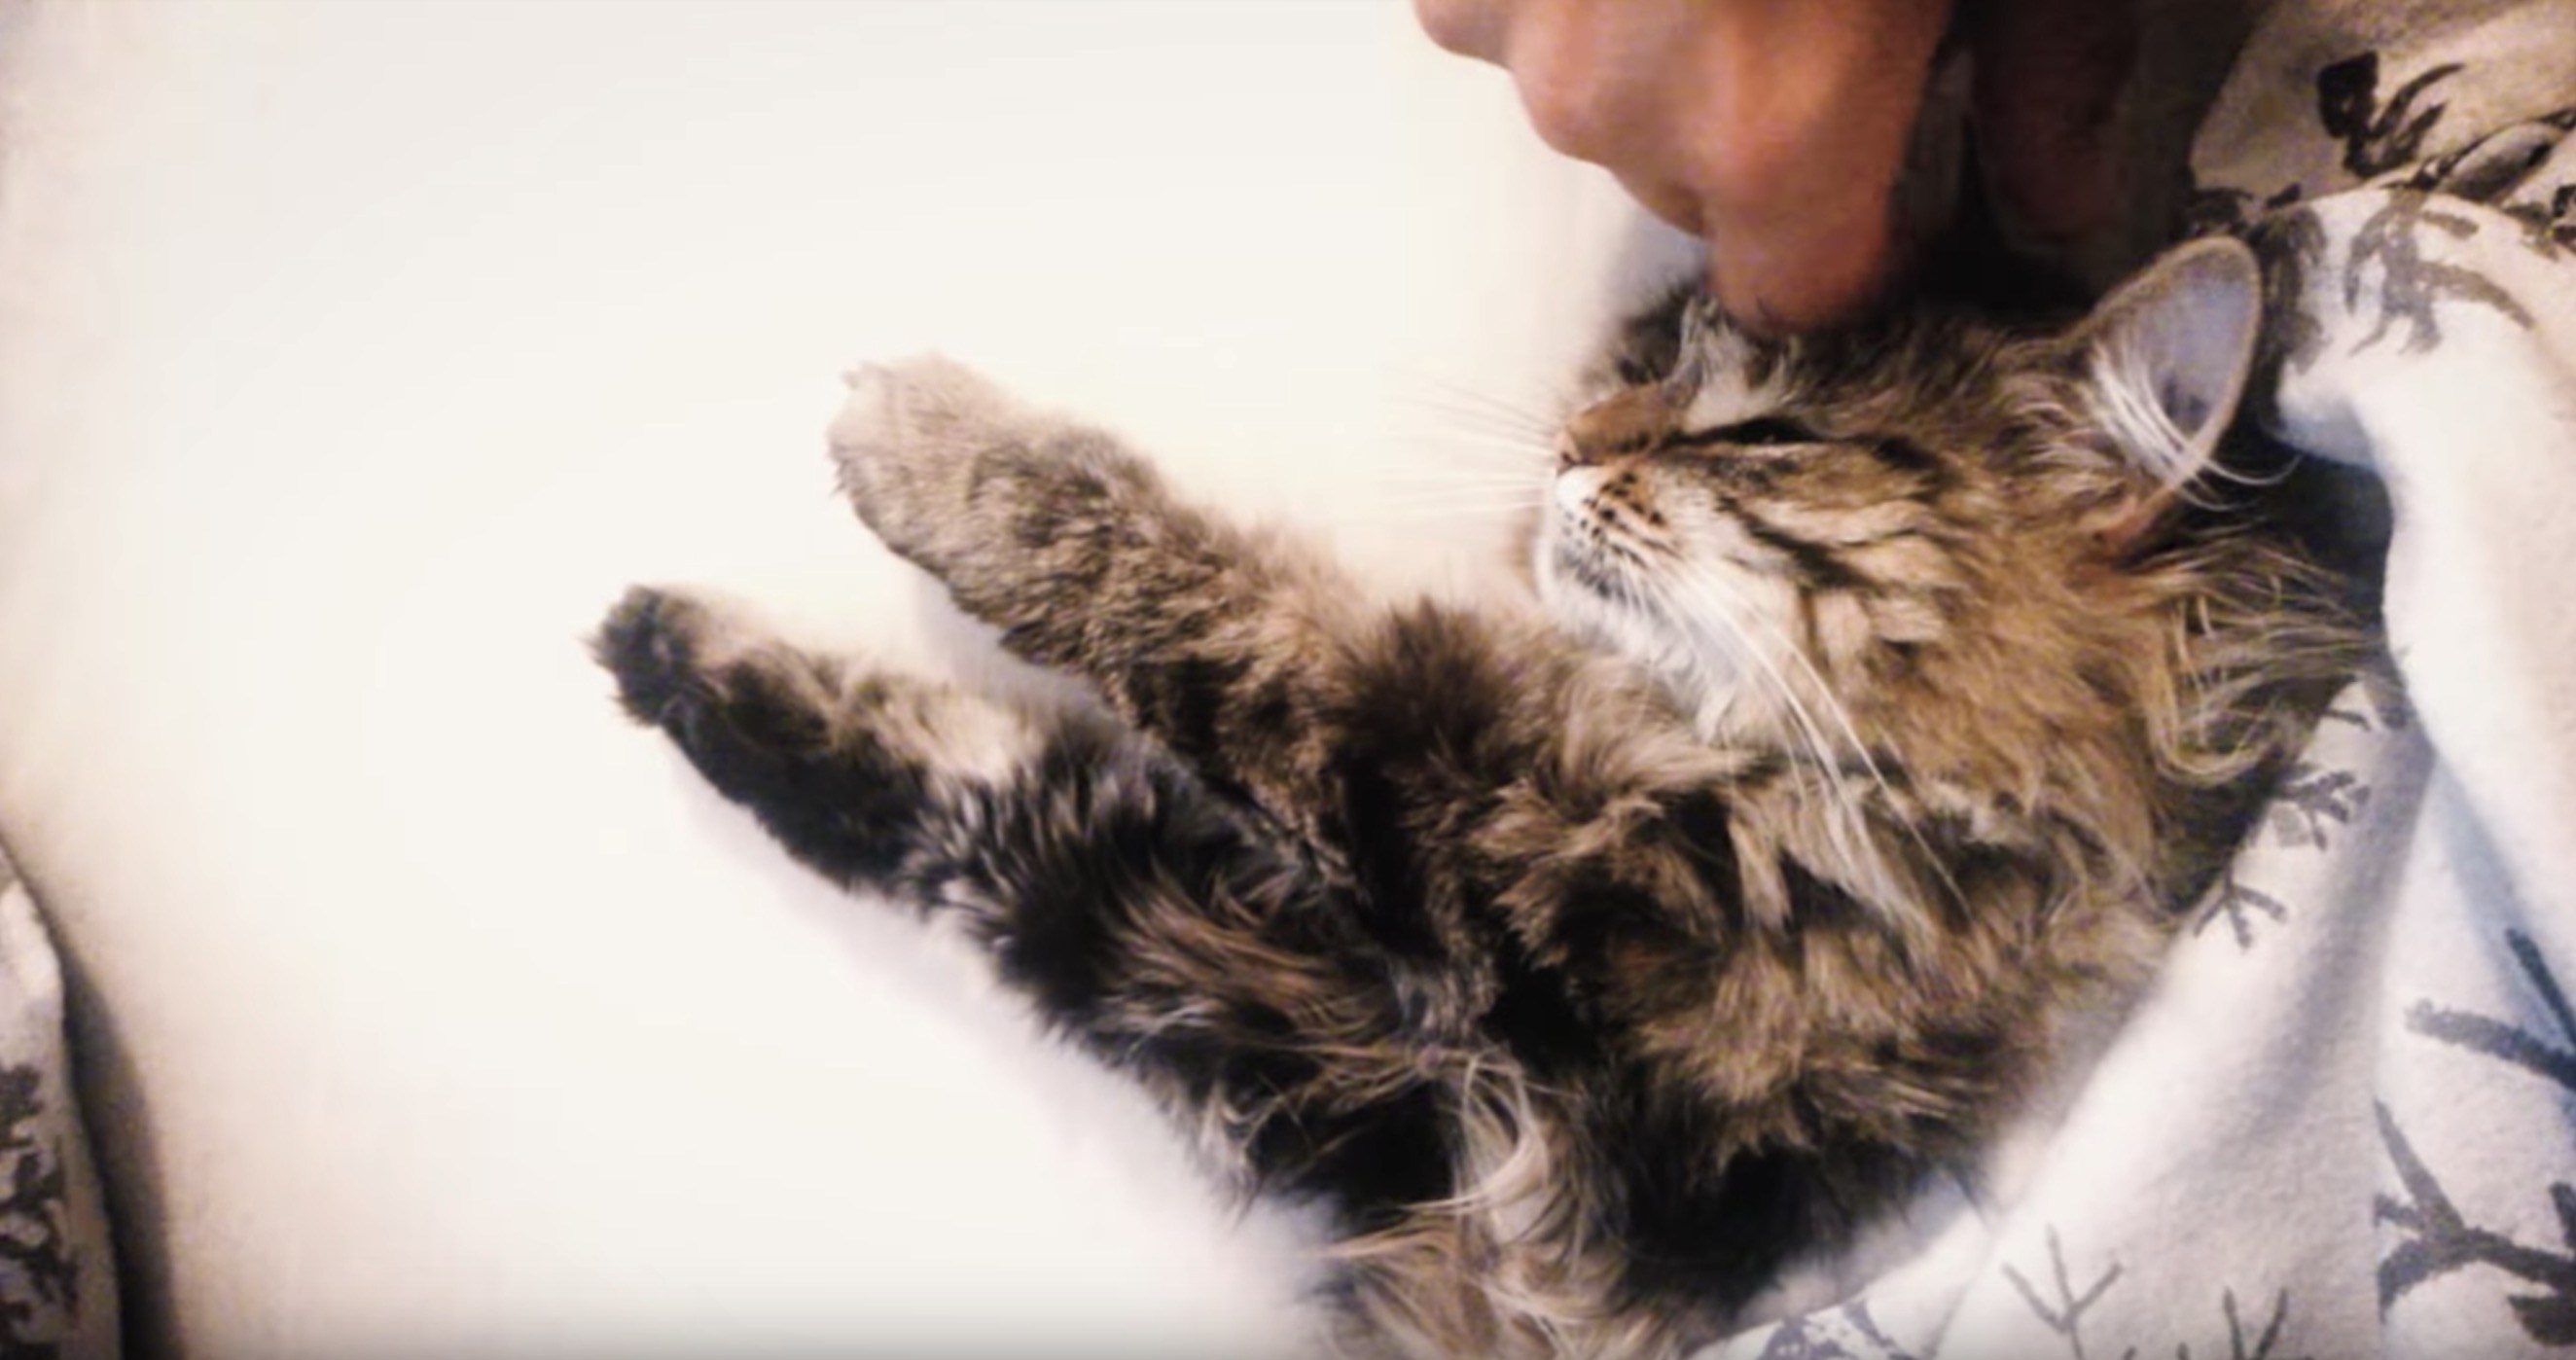 フルコースマッサージに癒される猫、なぜか見ている人も癒され